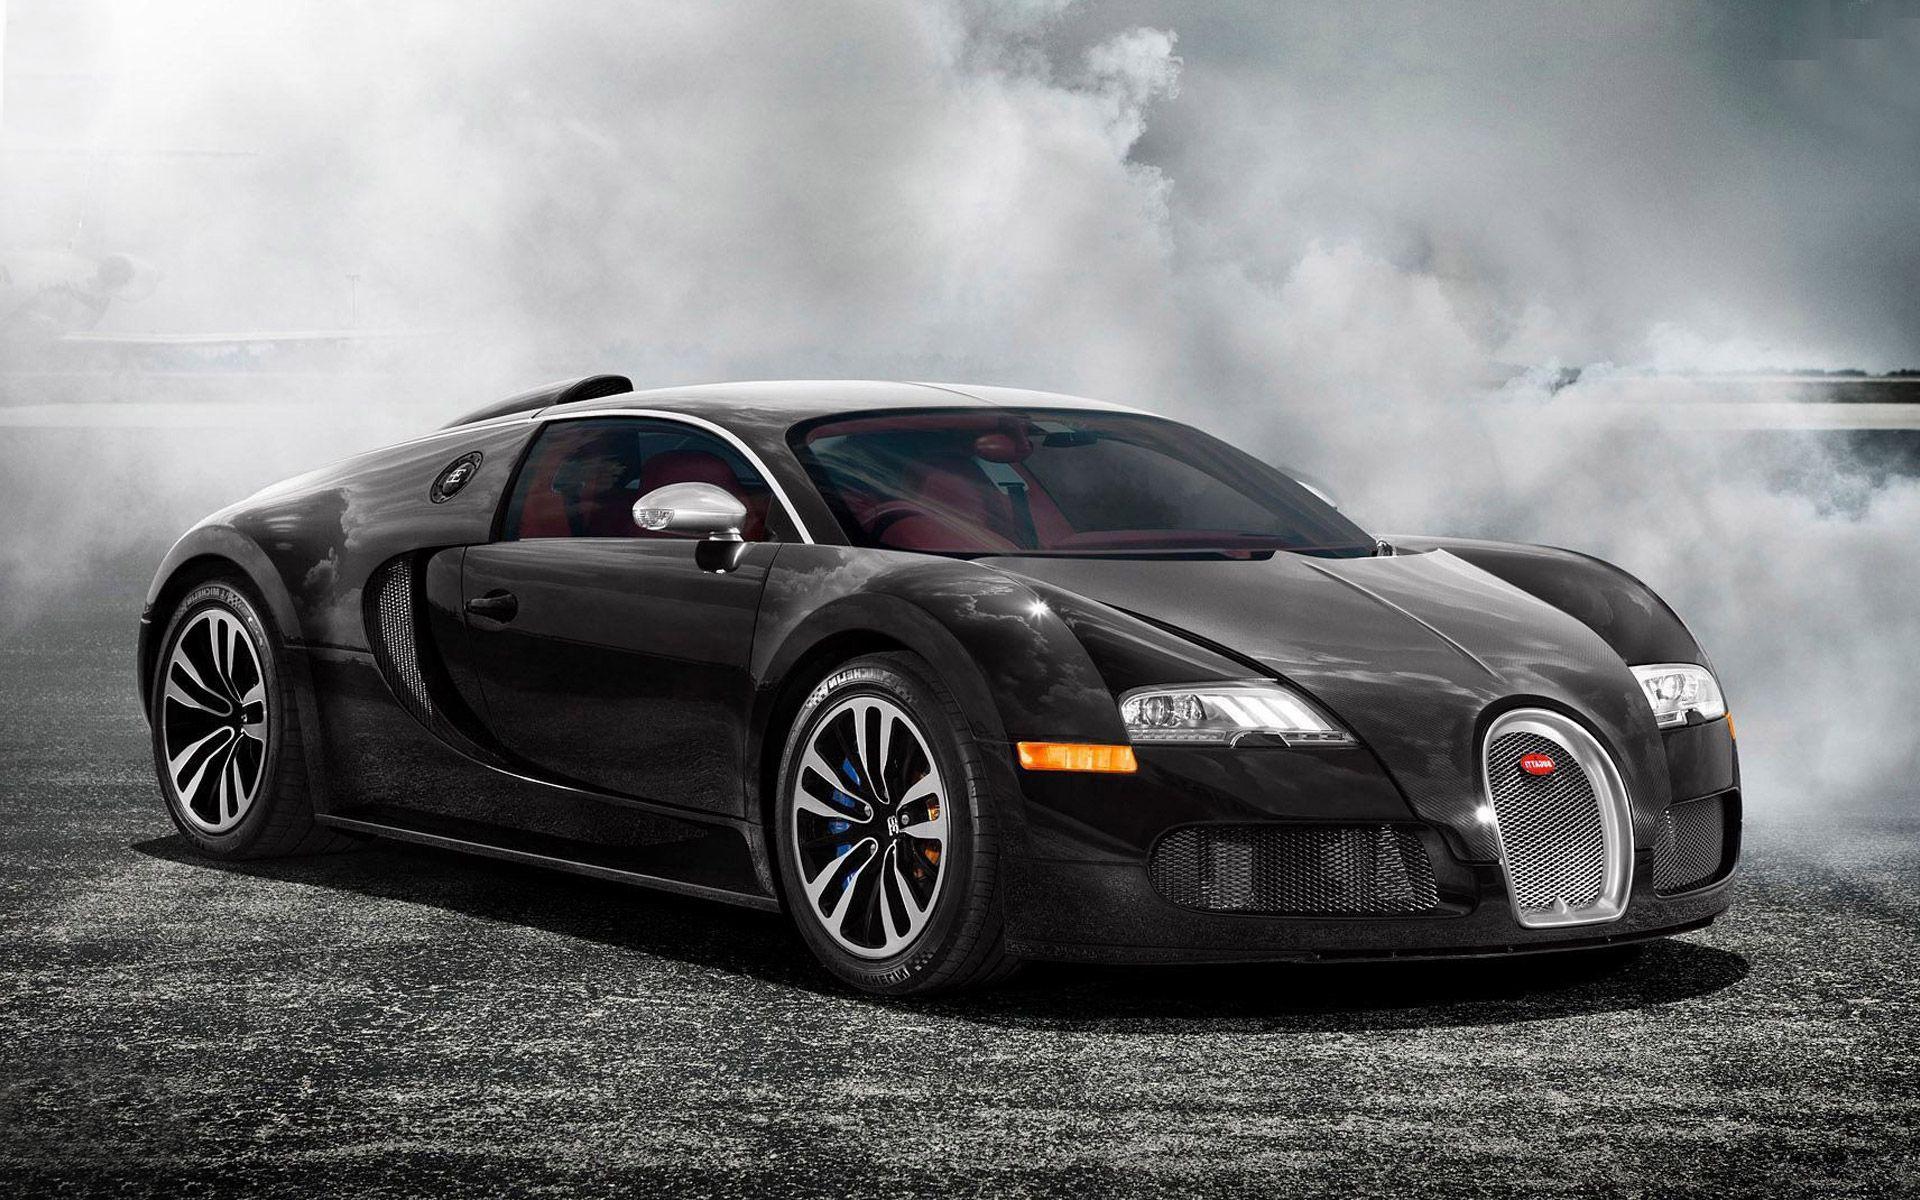 Black Bugatti Veyron Wallpaper